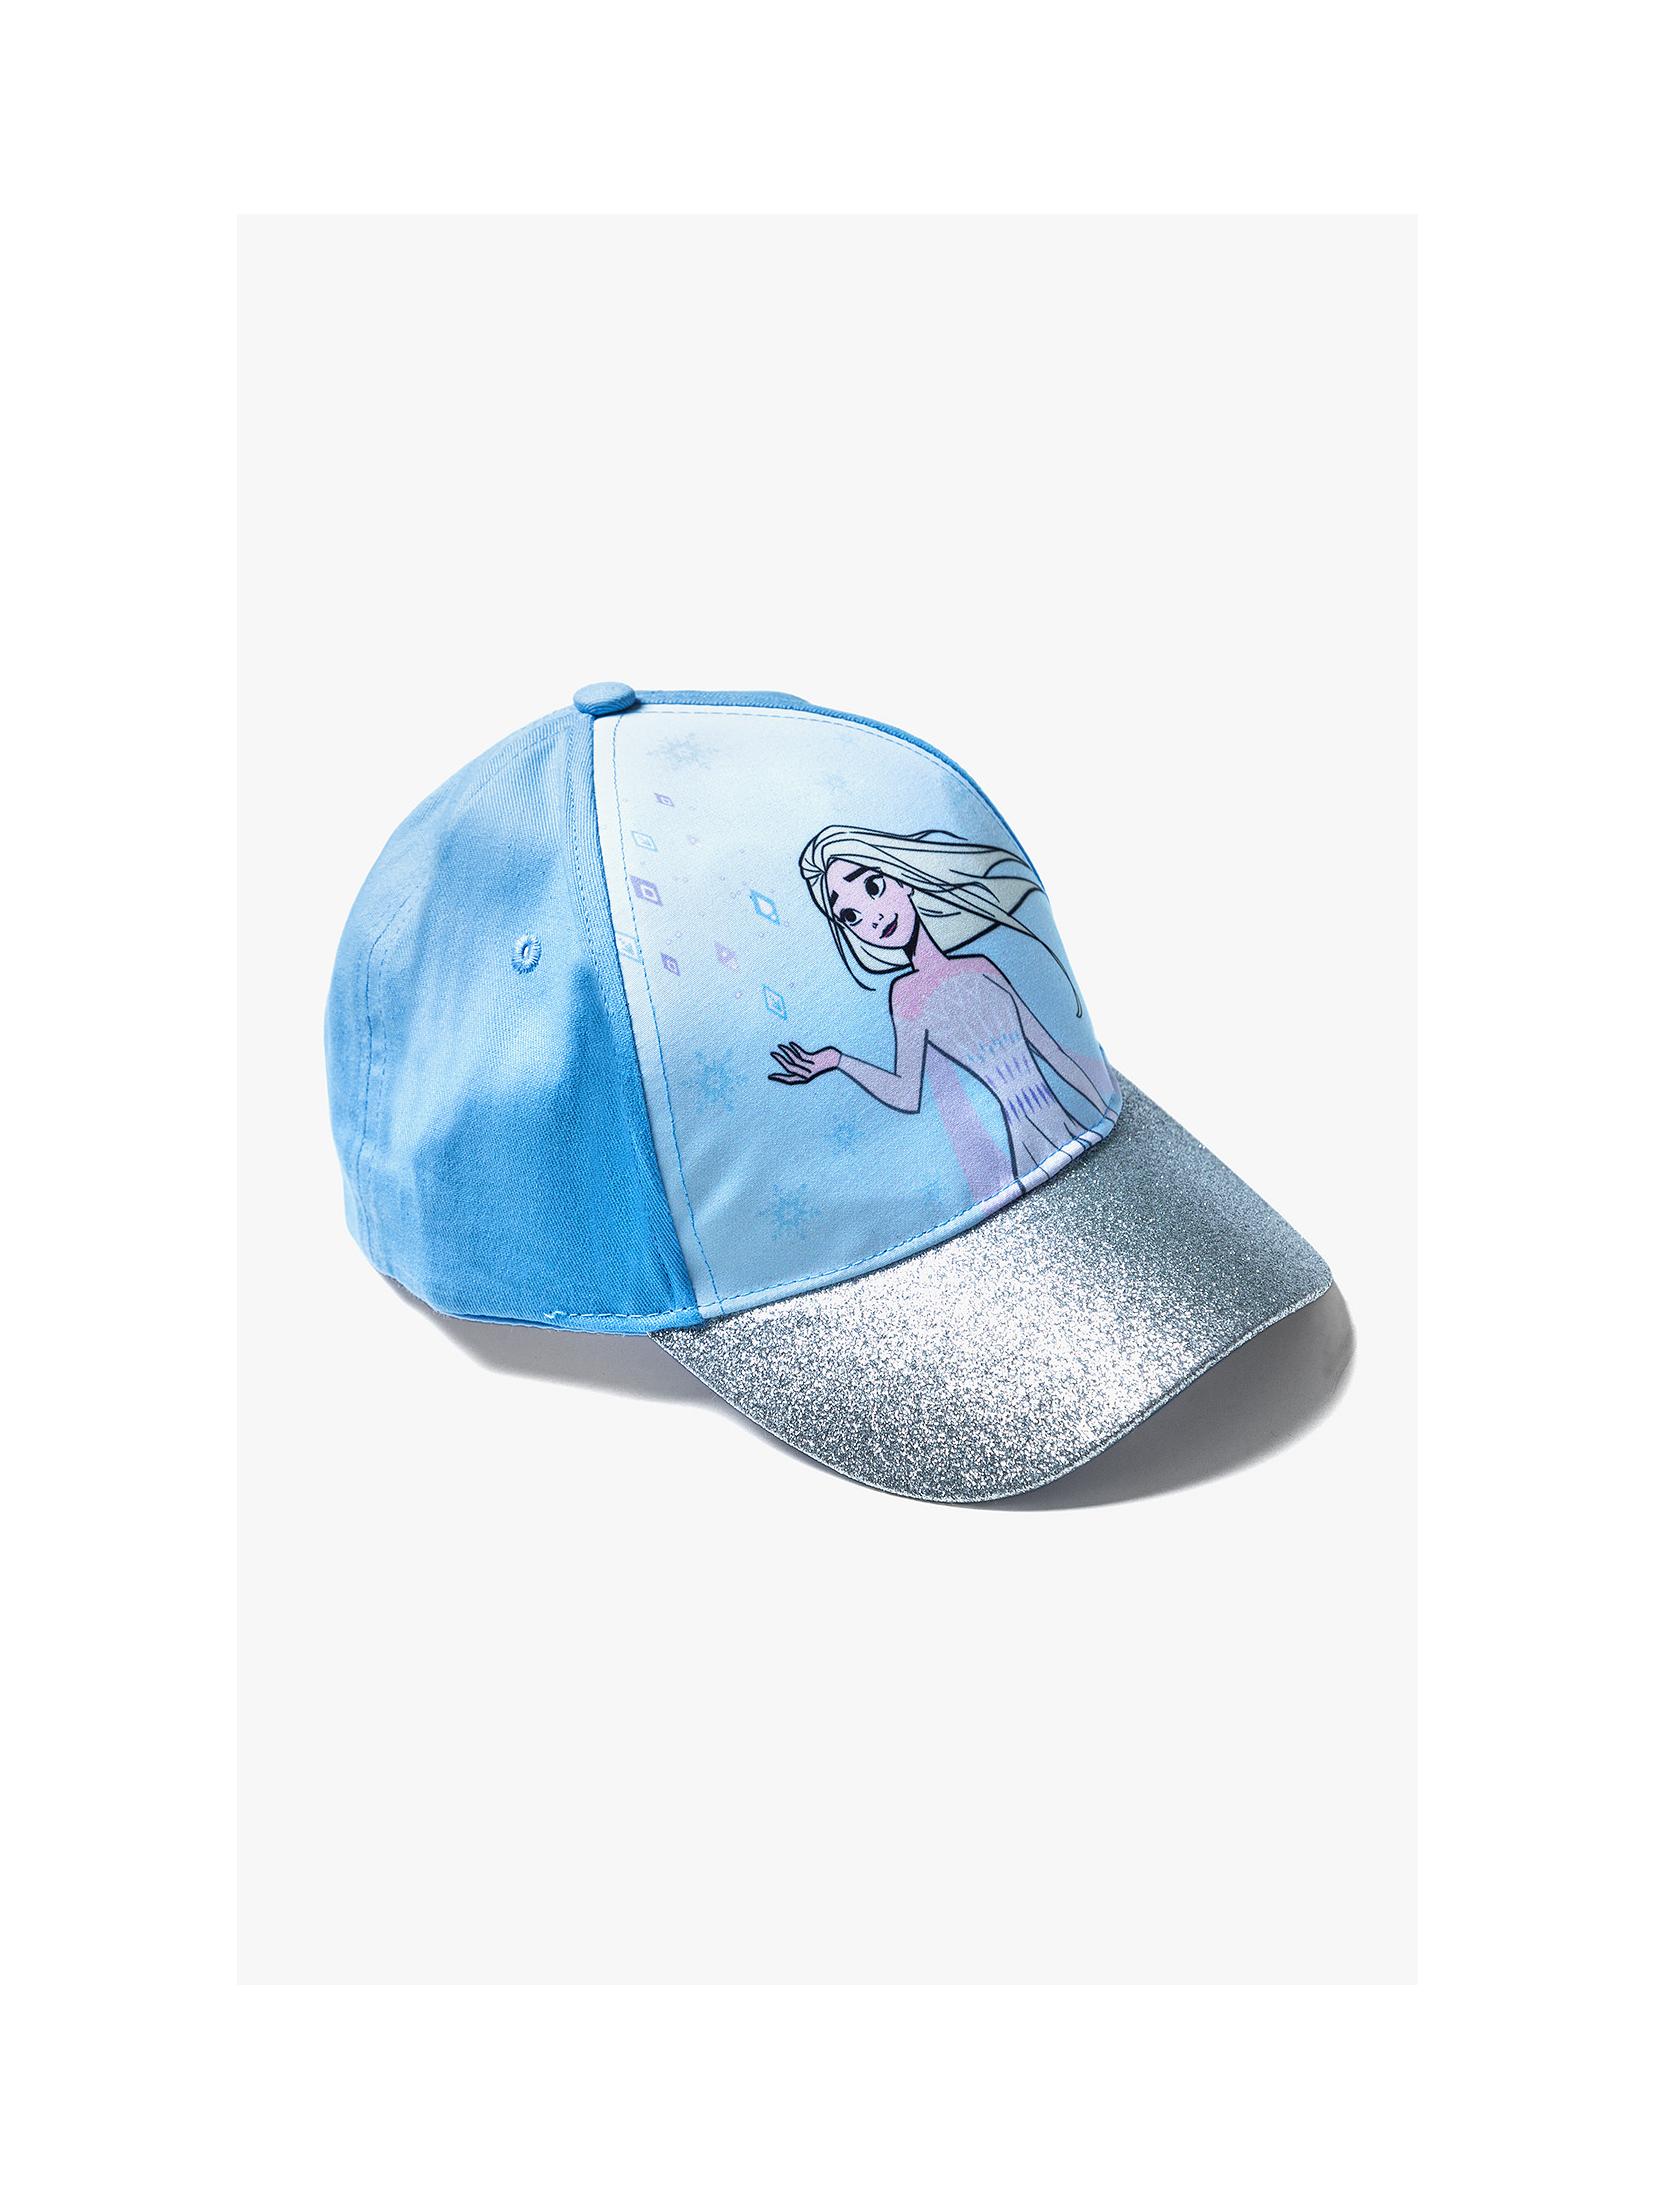 Bawełniana czapka dziewczęca z daszkiem Frozen - niebieska